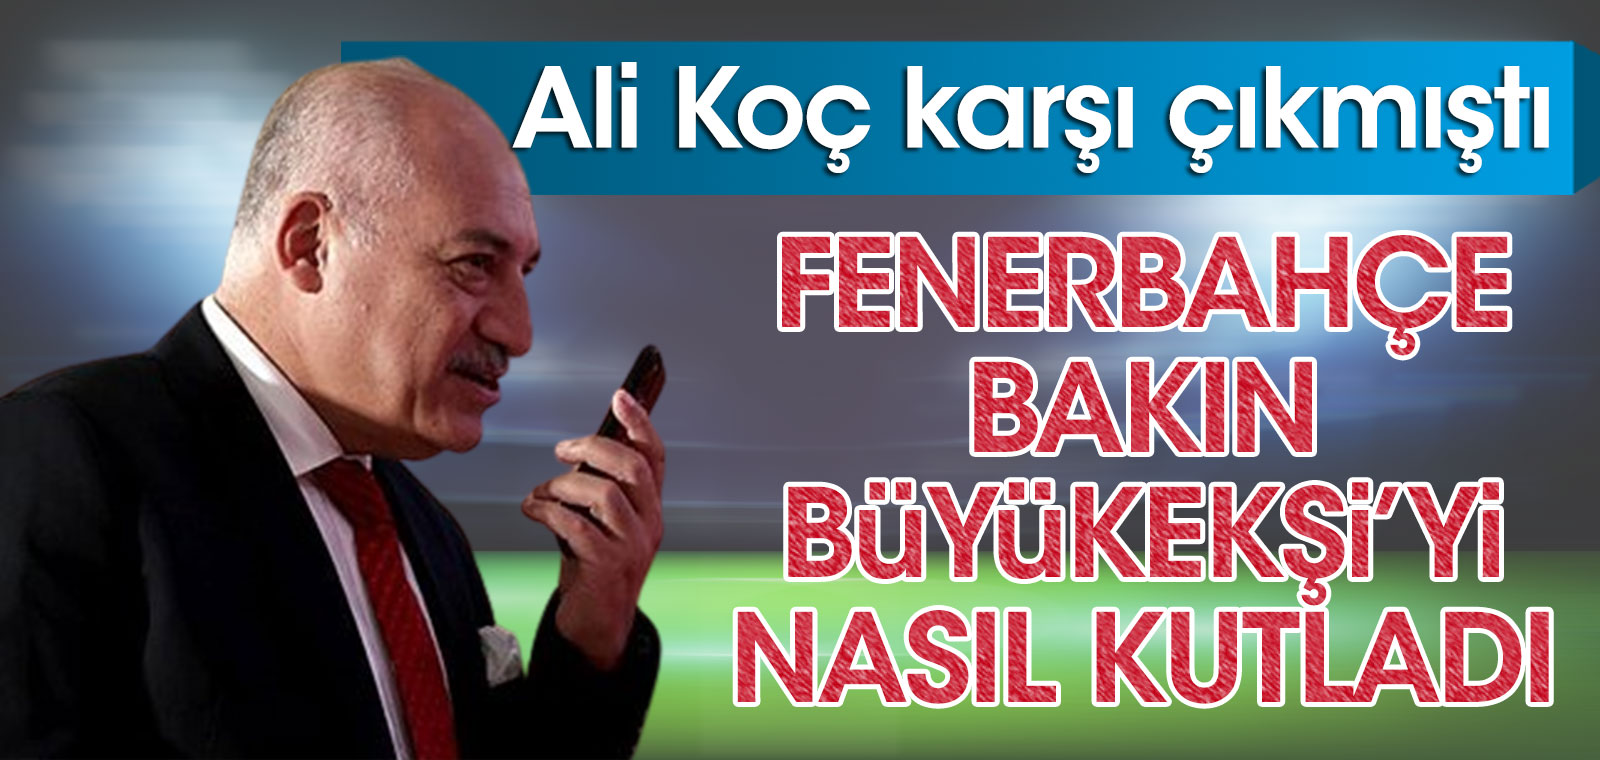 Ali Koç, FETÖ suçlamasıyla karşı çıkmıştı! Fenerbahçe, yeni TFF başkanını bakın nasıl kutladı? 